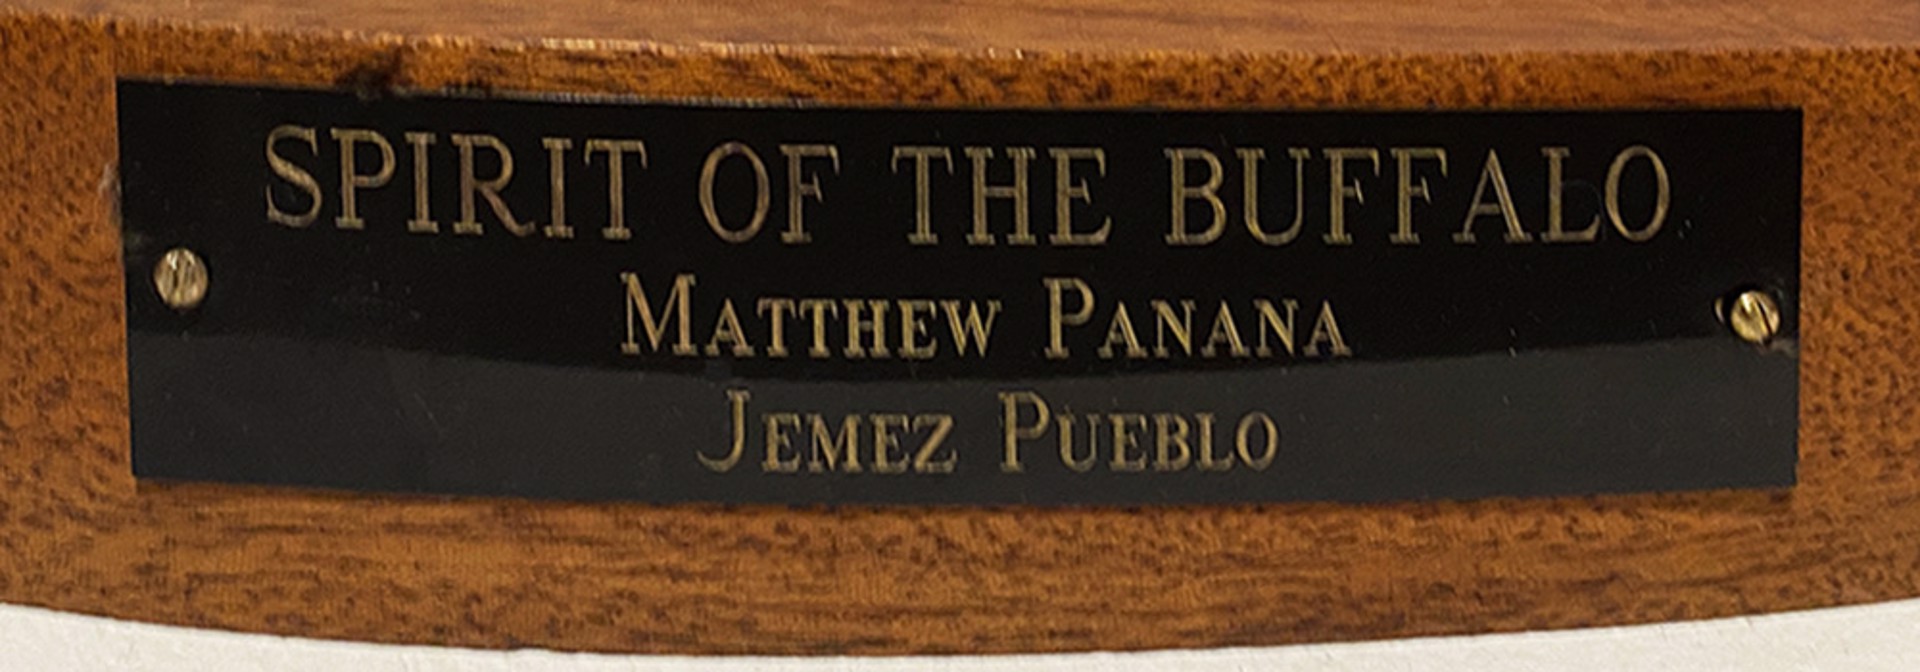 Spirit of the Buffalo by Matthew Panana